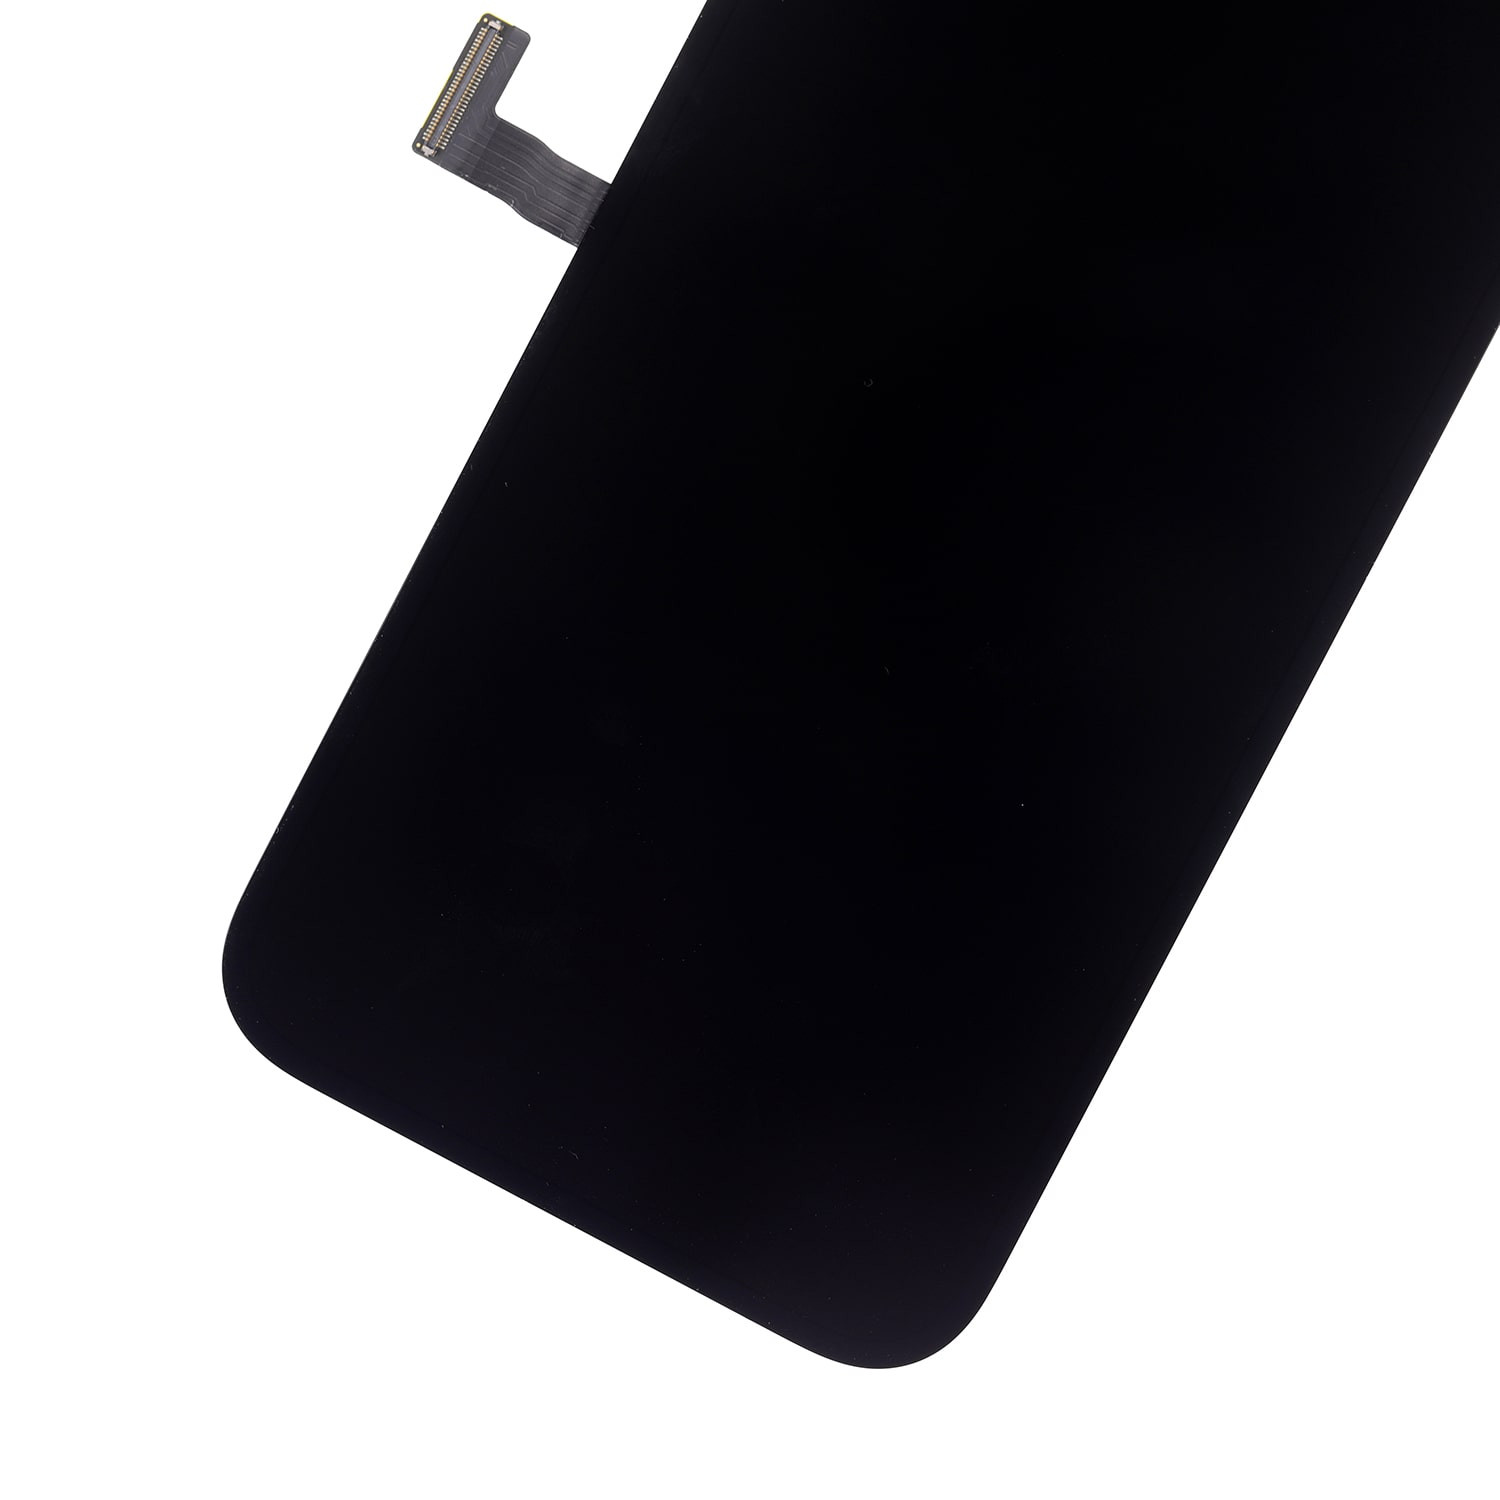 আইফোন 13 প্রো এর জন্য OLED অ্যাসেম্বলি স্ক্রিন প্রতিস্থাপন - 4 